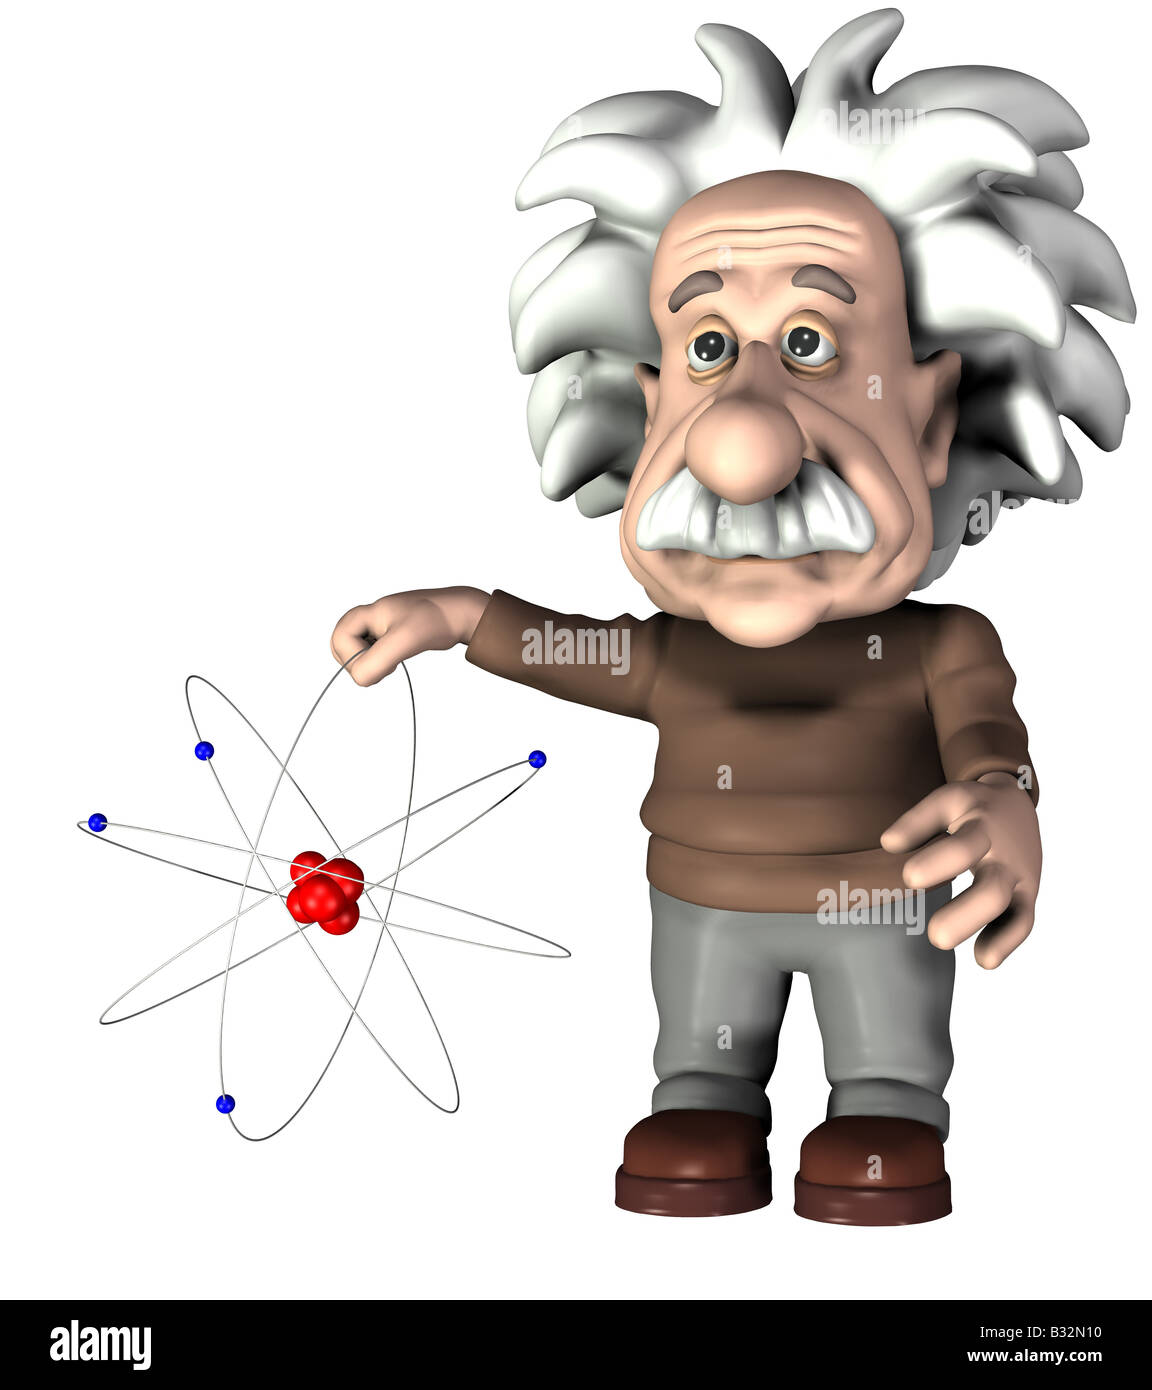 Did Einstein split the atom?